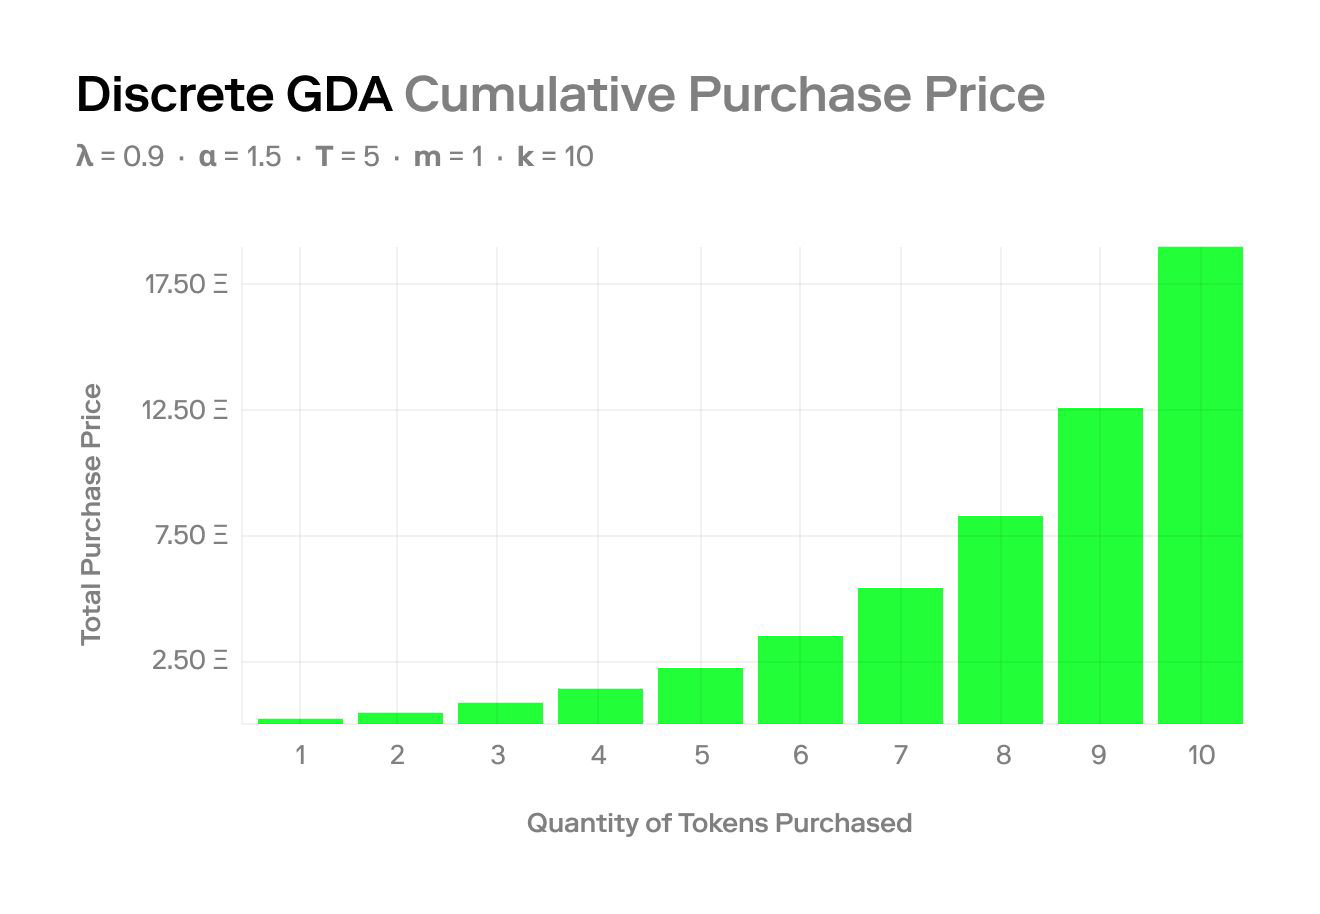 GDA discrete cumulative purchase price